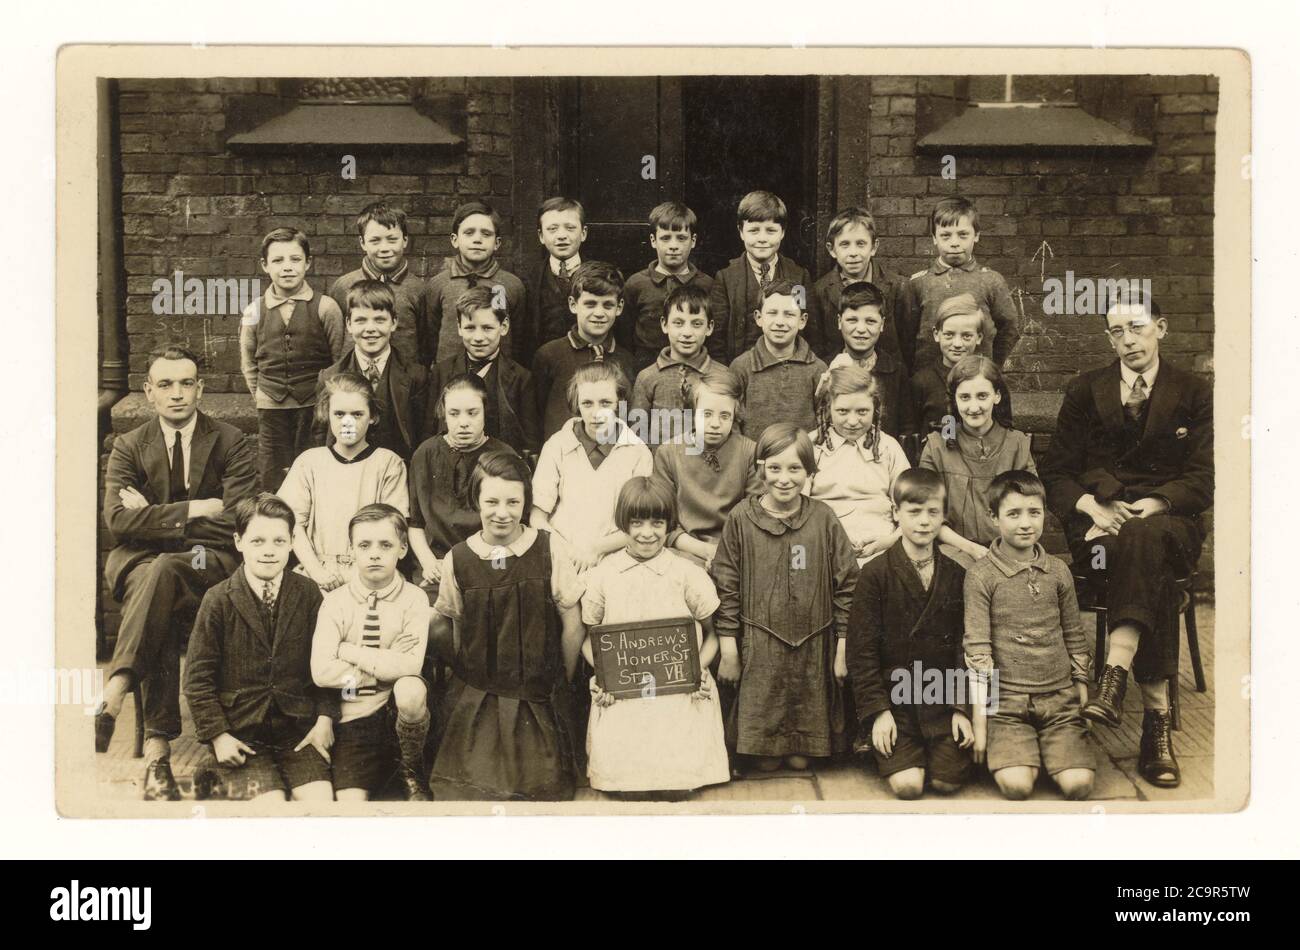 Carte postale du début des années 1900 des enfants de l'école les enfants en bas âge/la classe junior à l'extérieur de l'école St Andrew's Homer Street School, Manchester, Angleterre, U..K, 1925 Banque D'Images